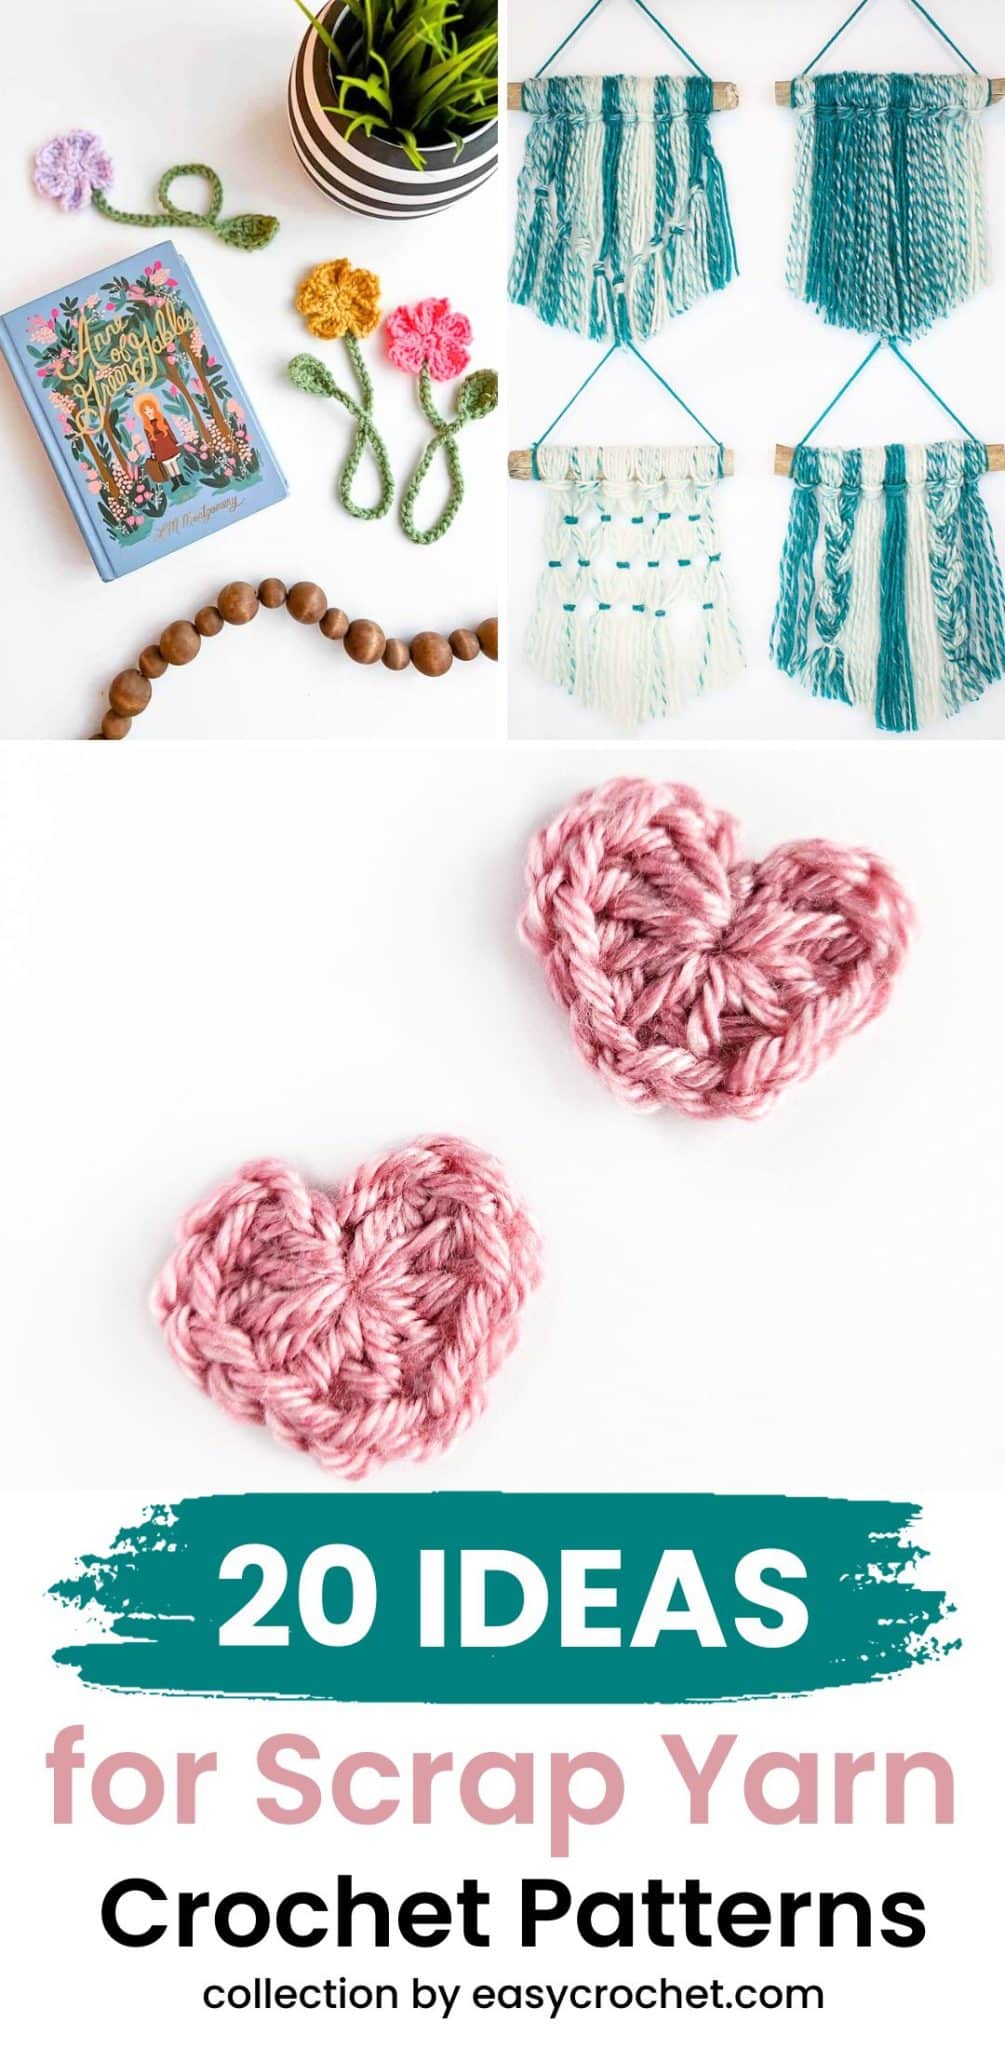 Scrap yarn crochet patterns